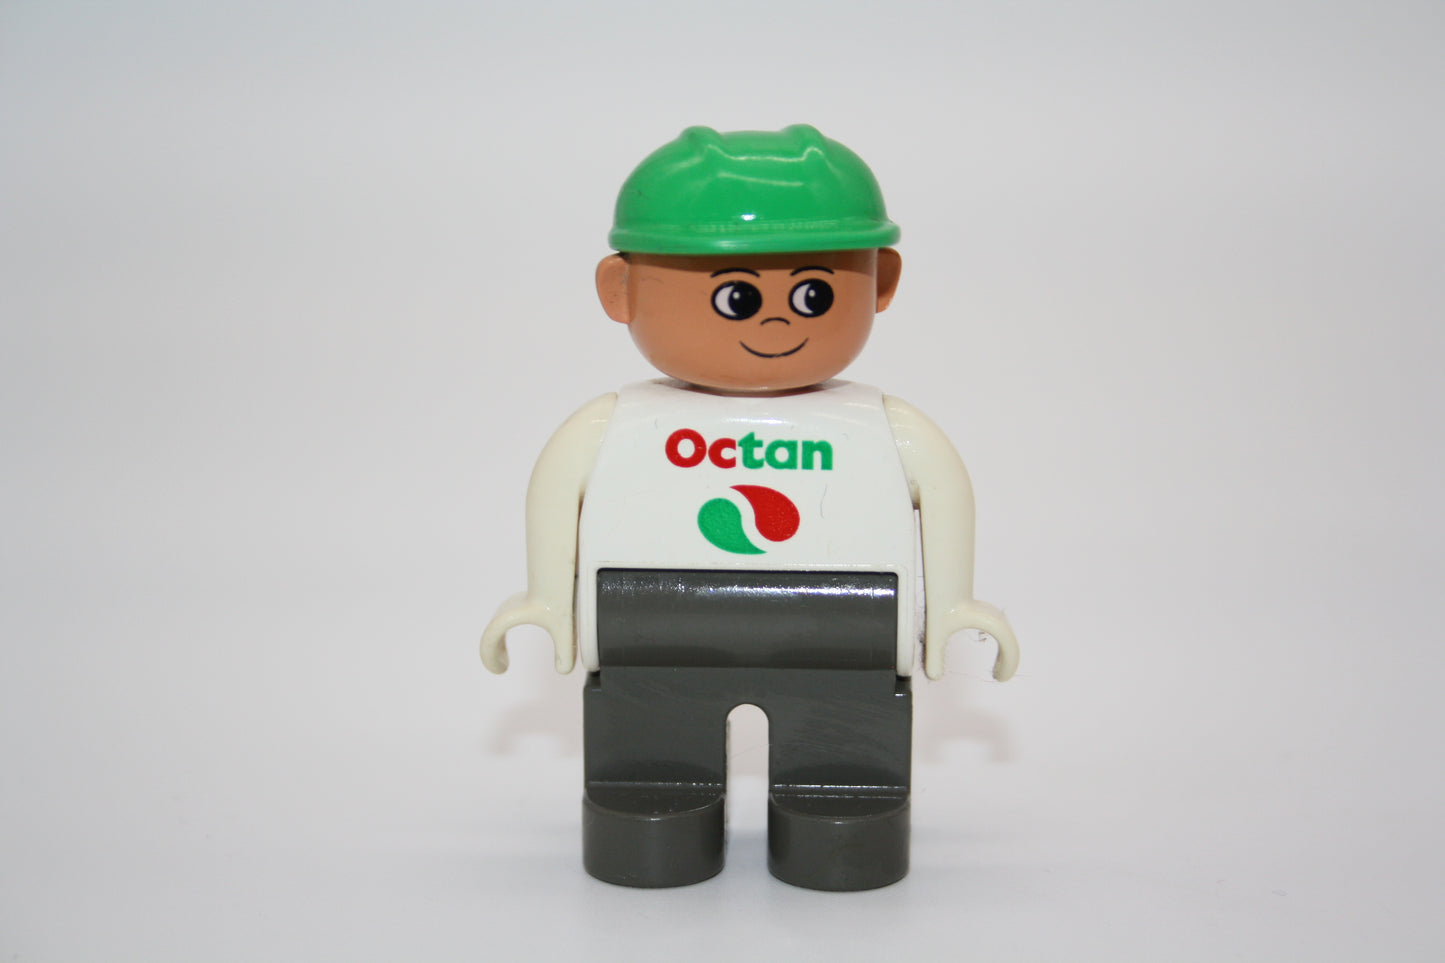 Duplo - Bauarbeiter/Tankwart alt - blaue graue/weißes Oberteil m. Aufschrift Octan/grüner Helm  - Mann - Figur